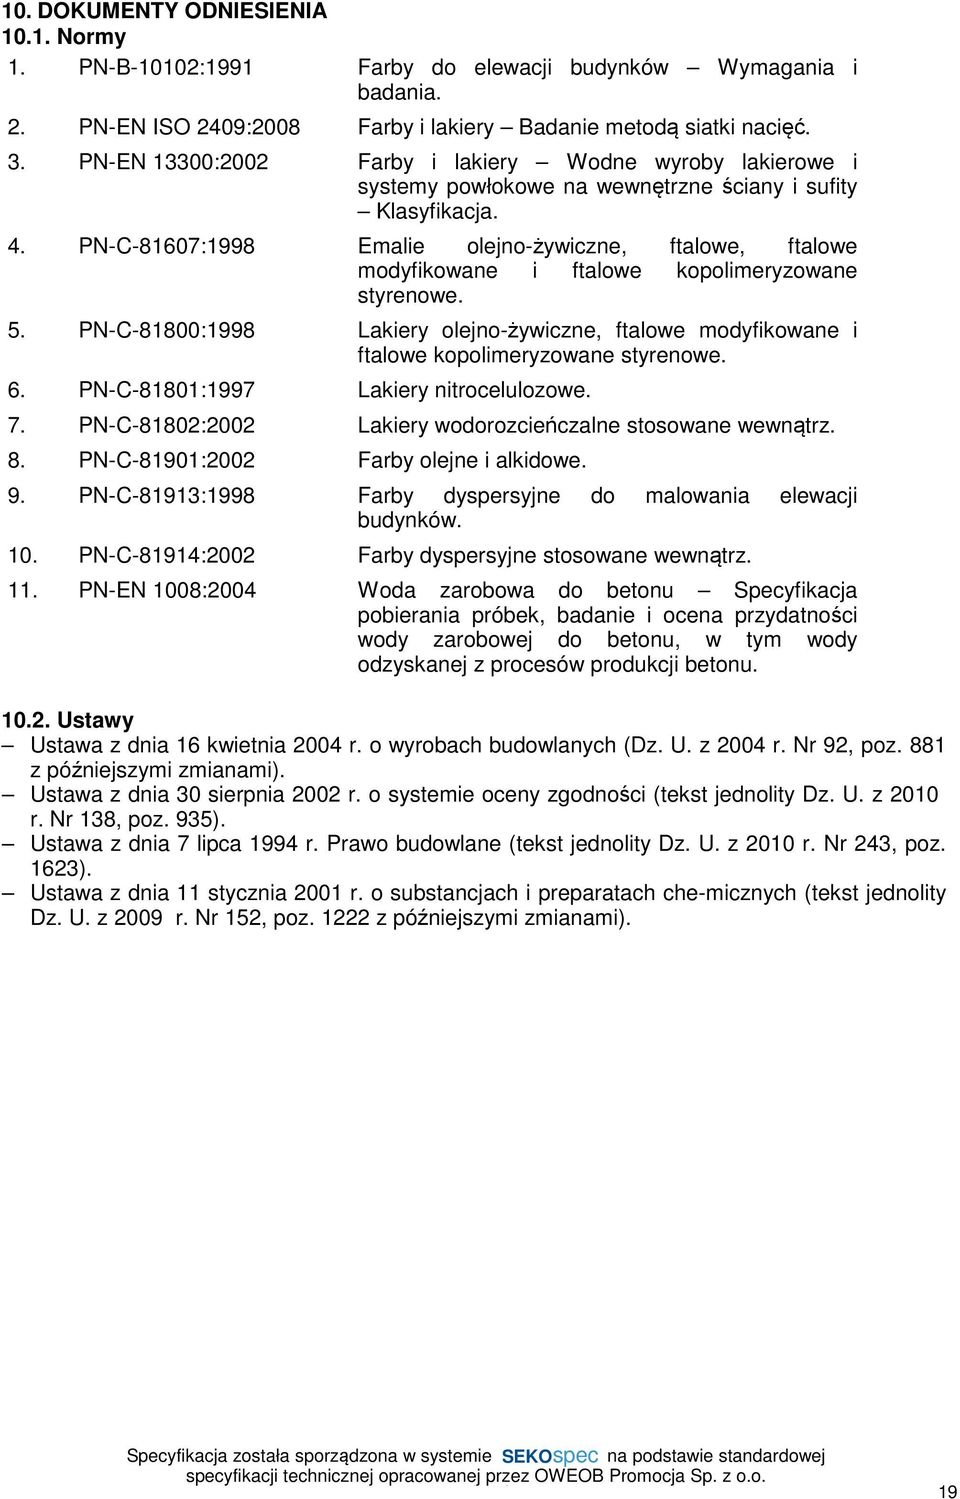 PN-C-81607:1998 Emalie olejno-żywiczne, ftalowe, ftalowe modyfikowane i ftalowe kopolimeryzowane styrenowe. 5.